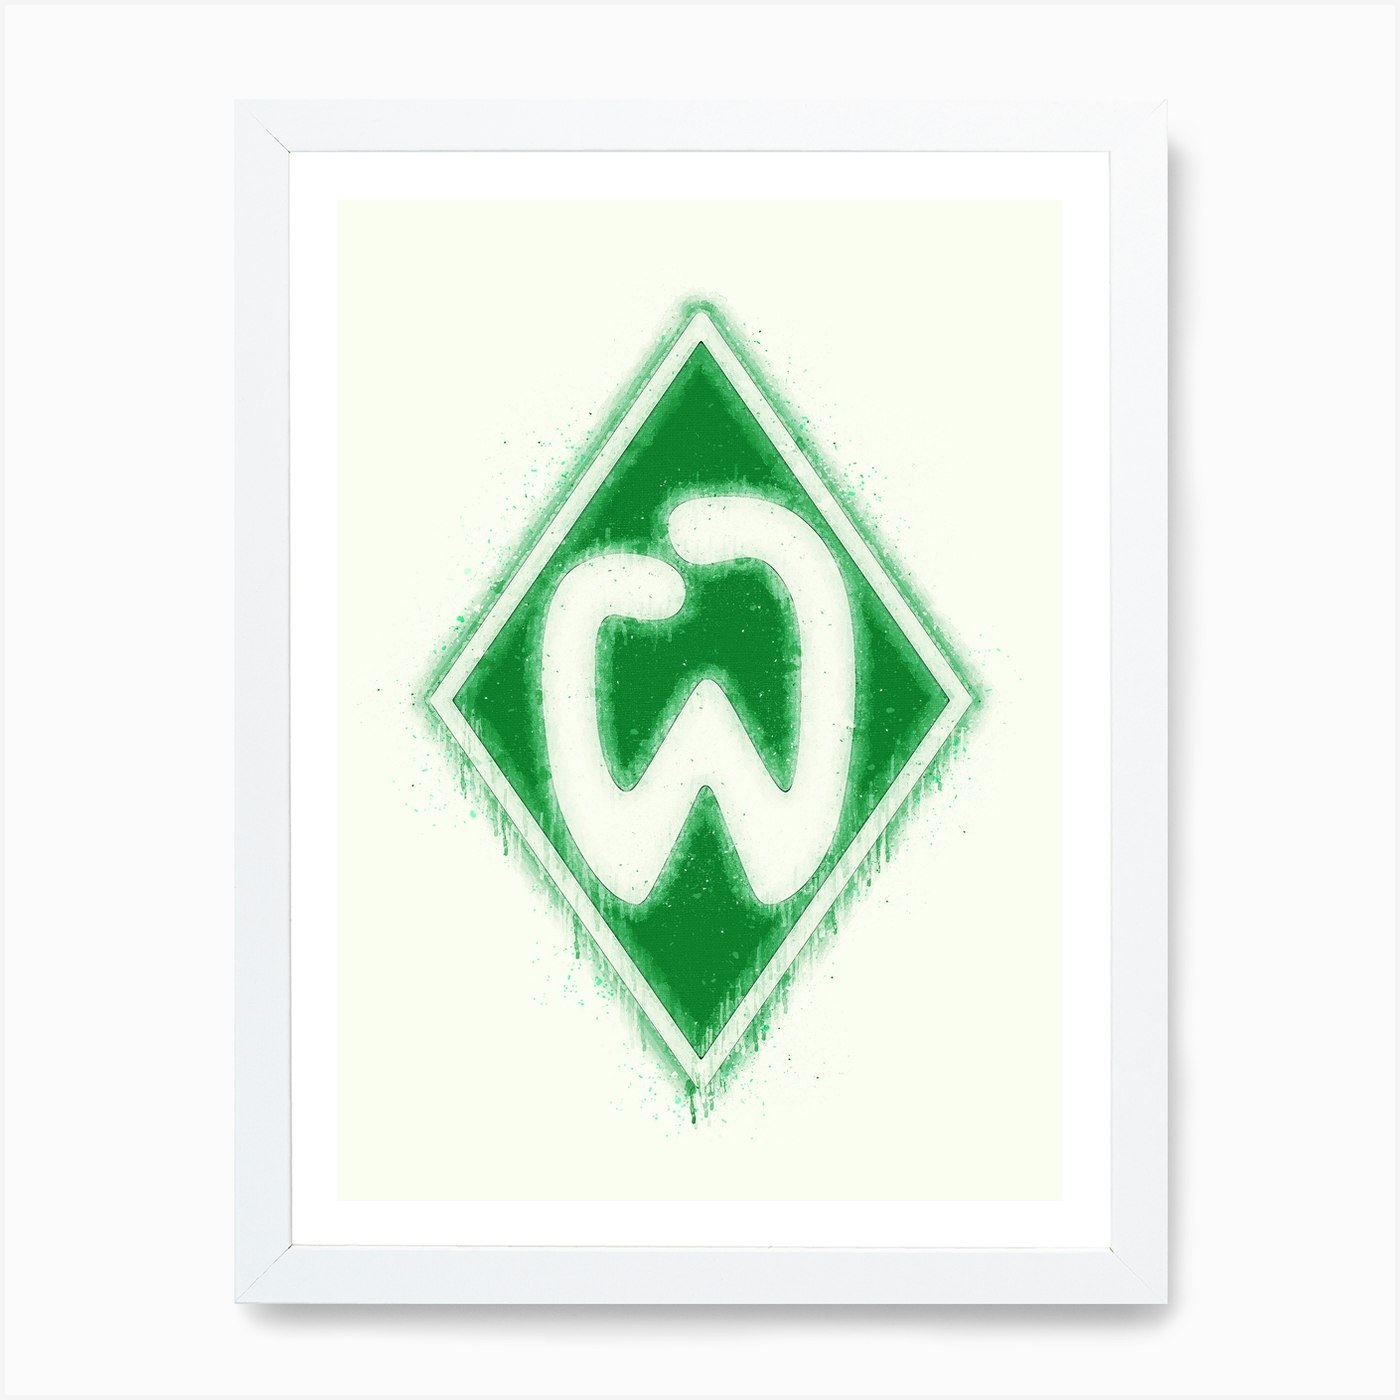 Sv Werder Bremen 1 Art KunStudio - Print Fy by